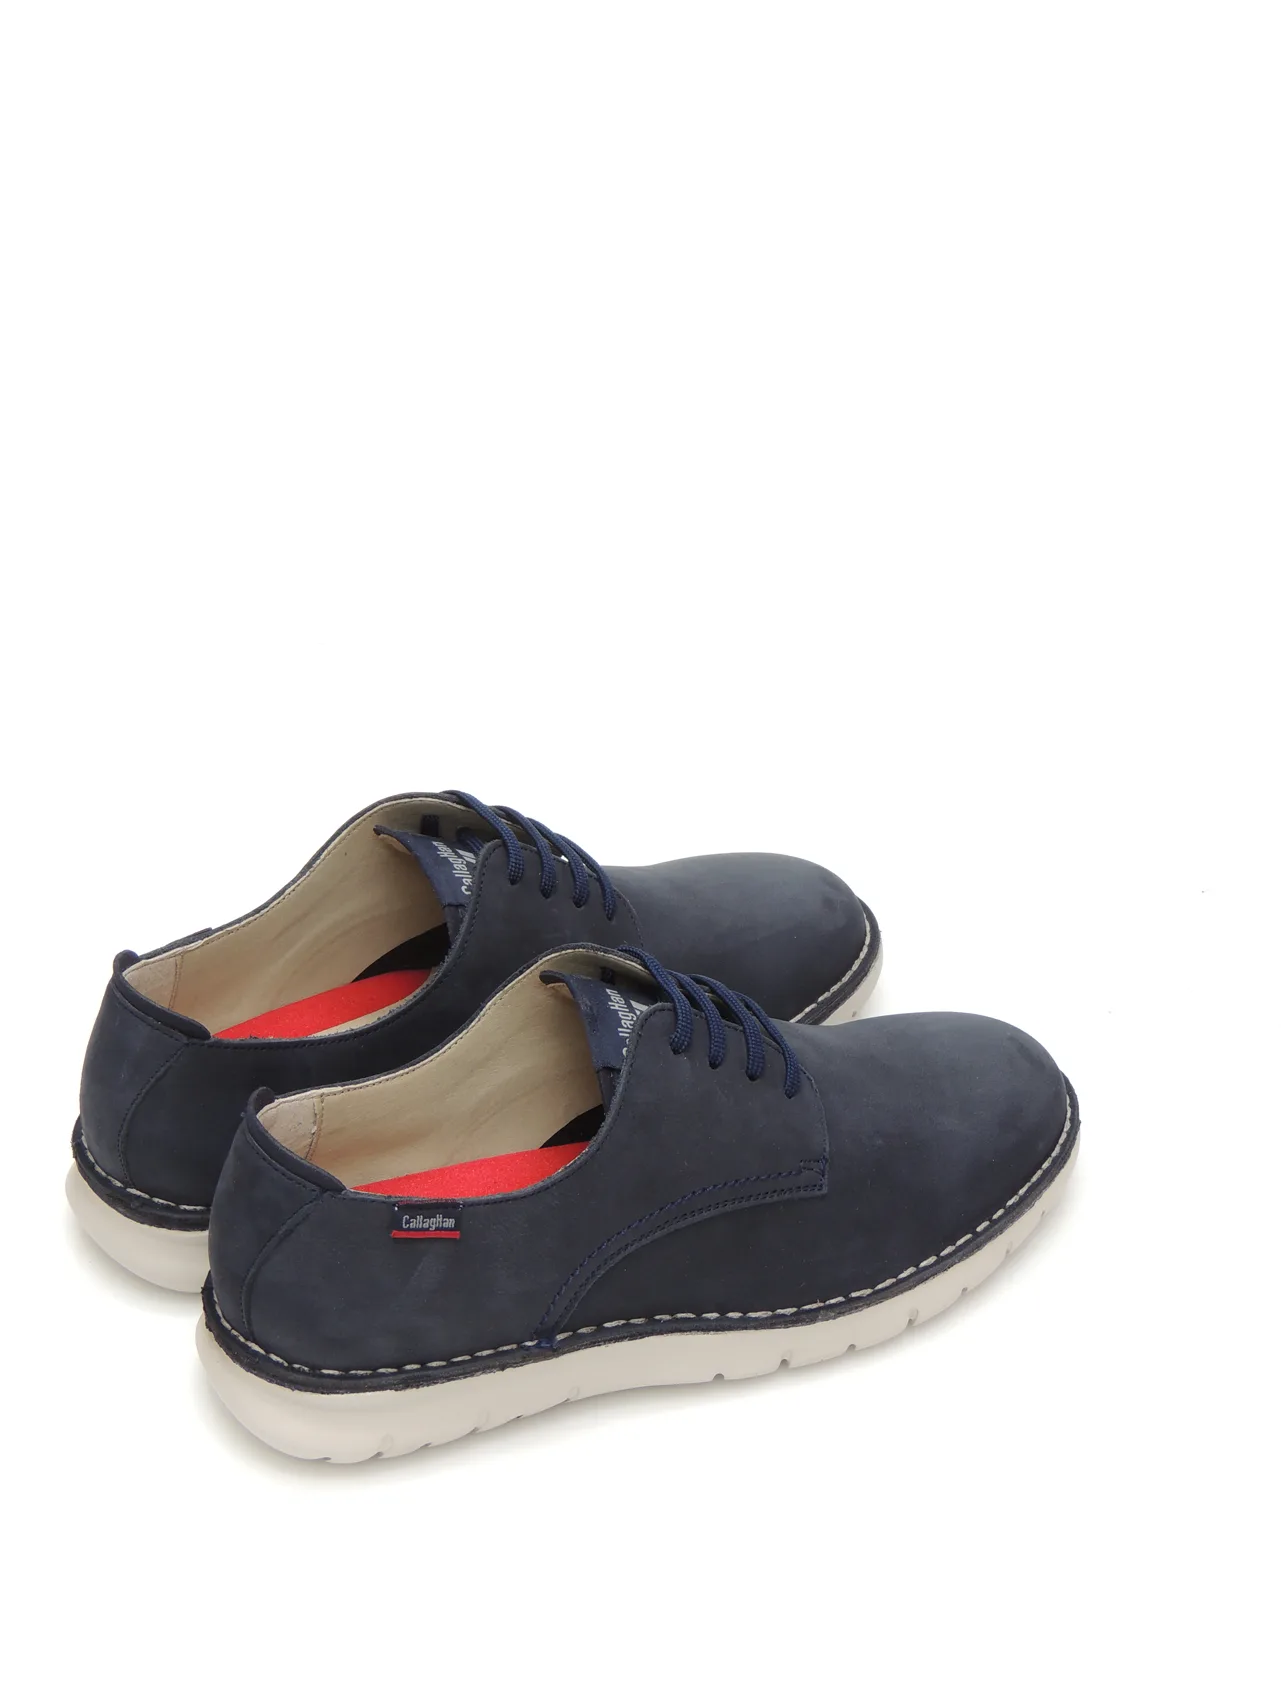 zapatos-derby-callaghan-47105-nobuk-marino